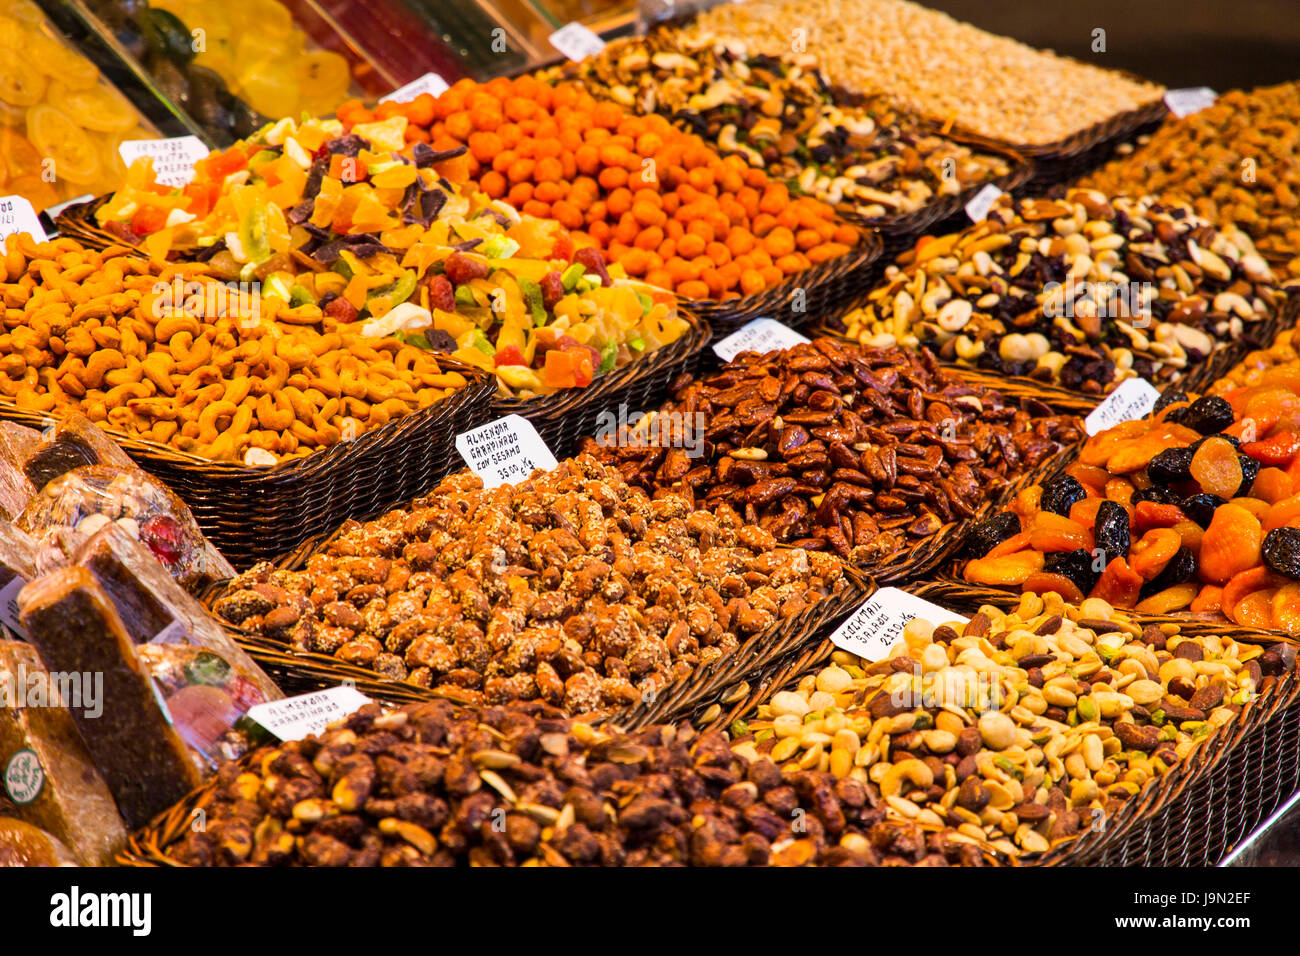 Appetitlich zeigt an Obst, Gemüse, Nüsse, Süßigkeiten, Fleisch, Fisch und Käse Besucher Grüße zum ausbreitenden Markt La Boqueria in Barcelona, Spanien. Stockfoto